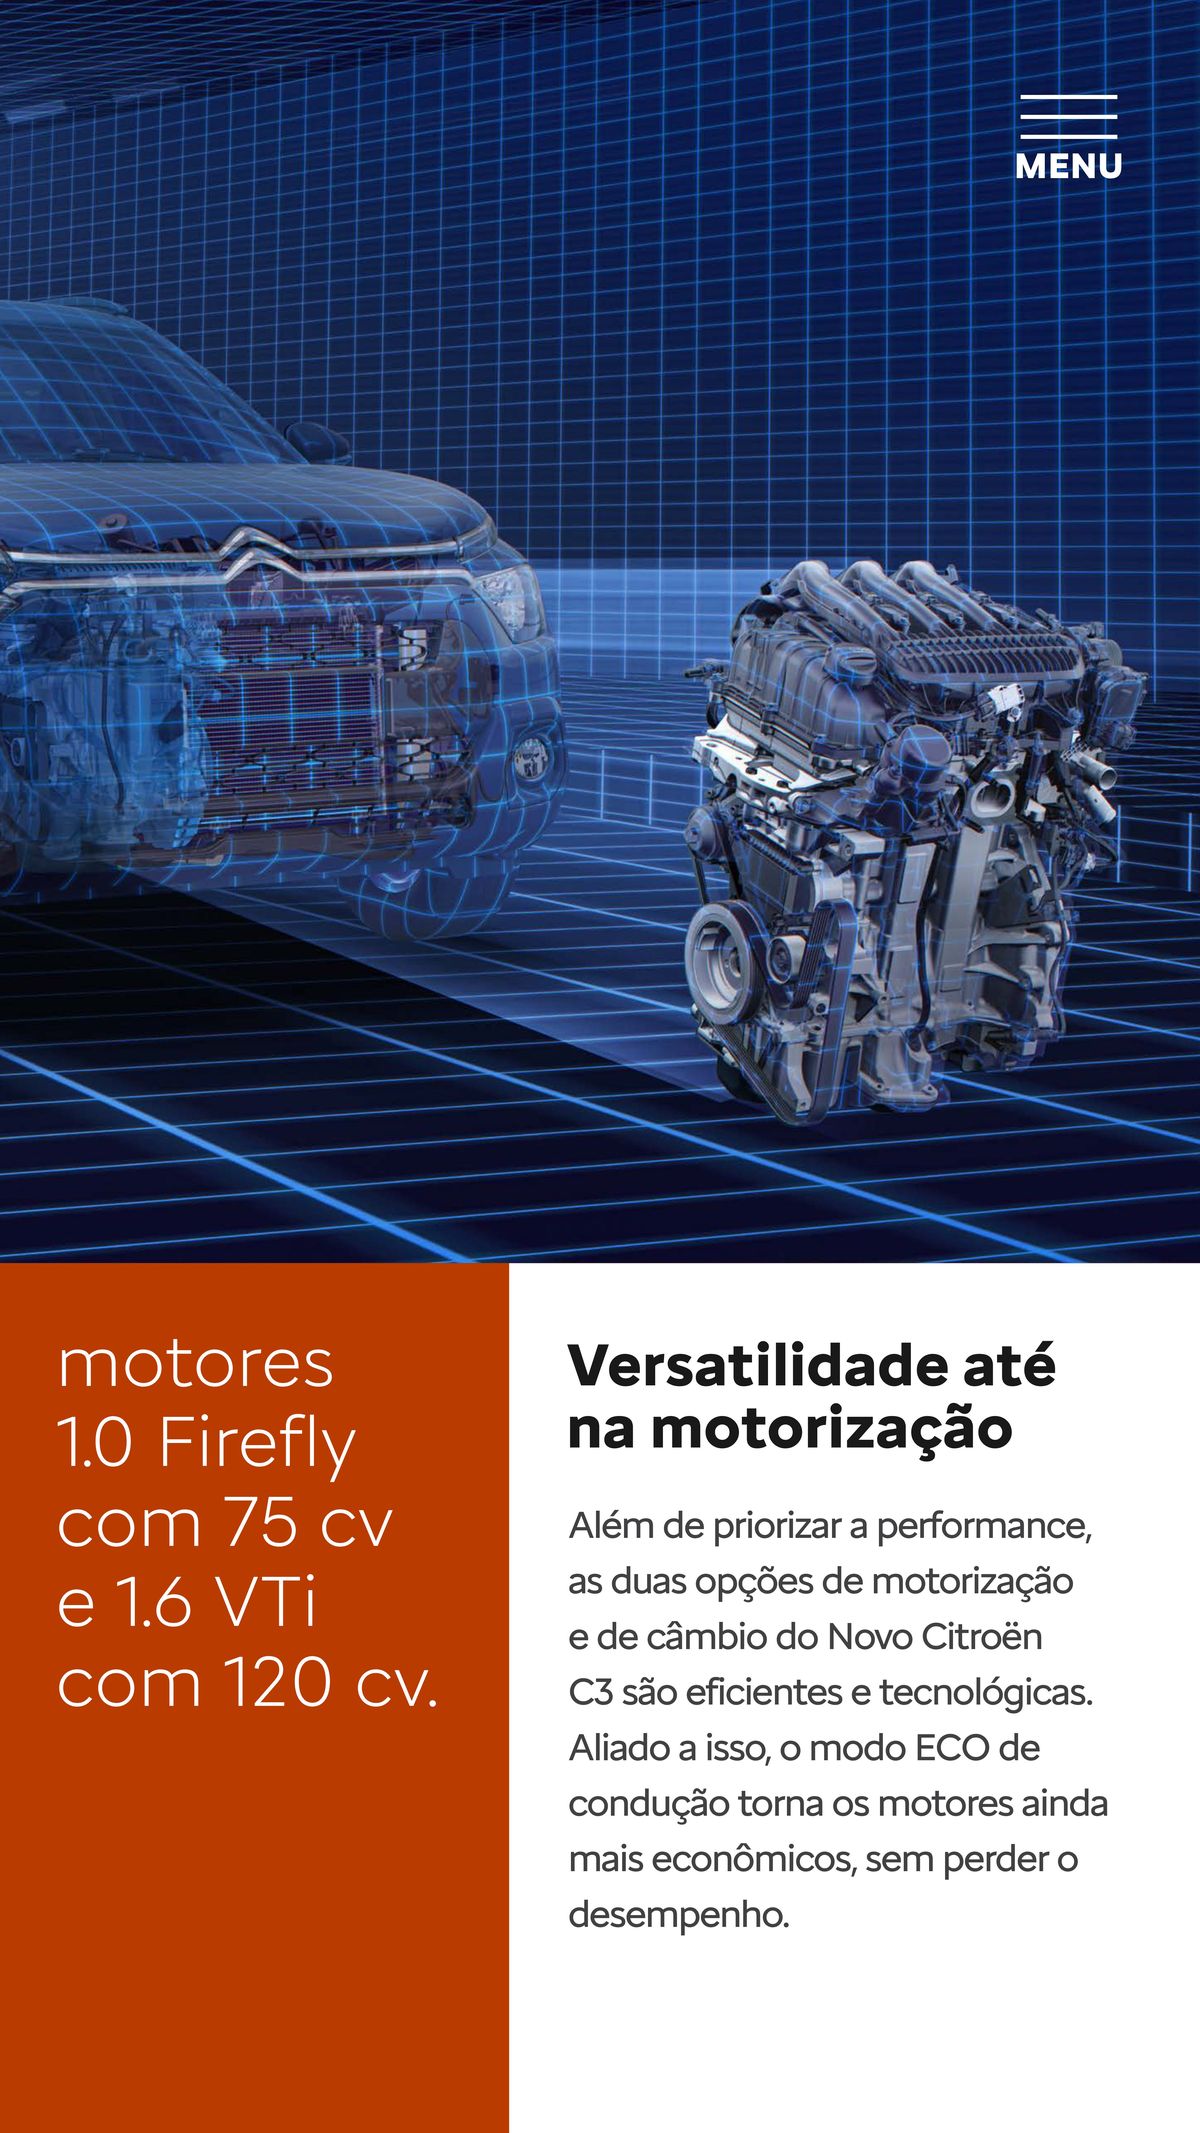 Motores eficientes e tecnológicos com até 120 cv